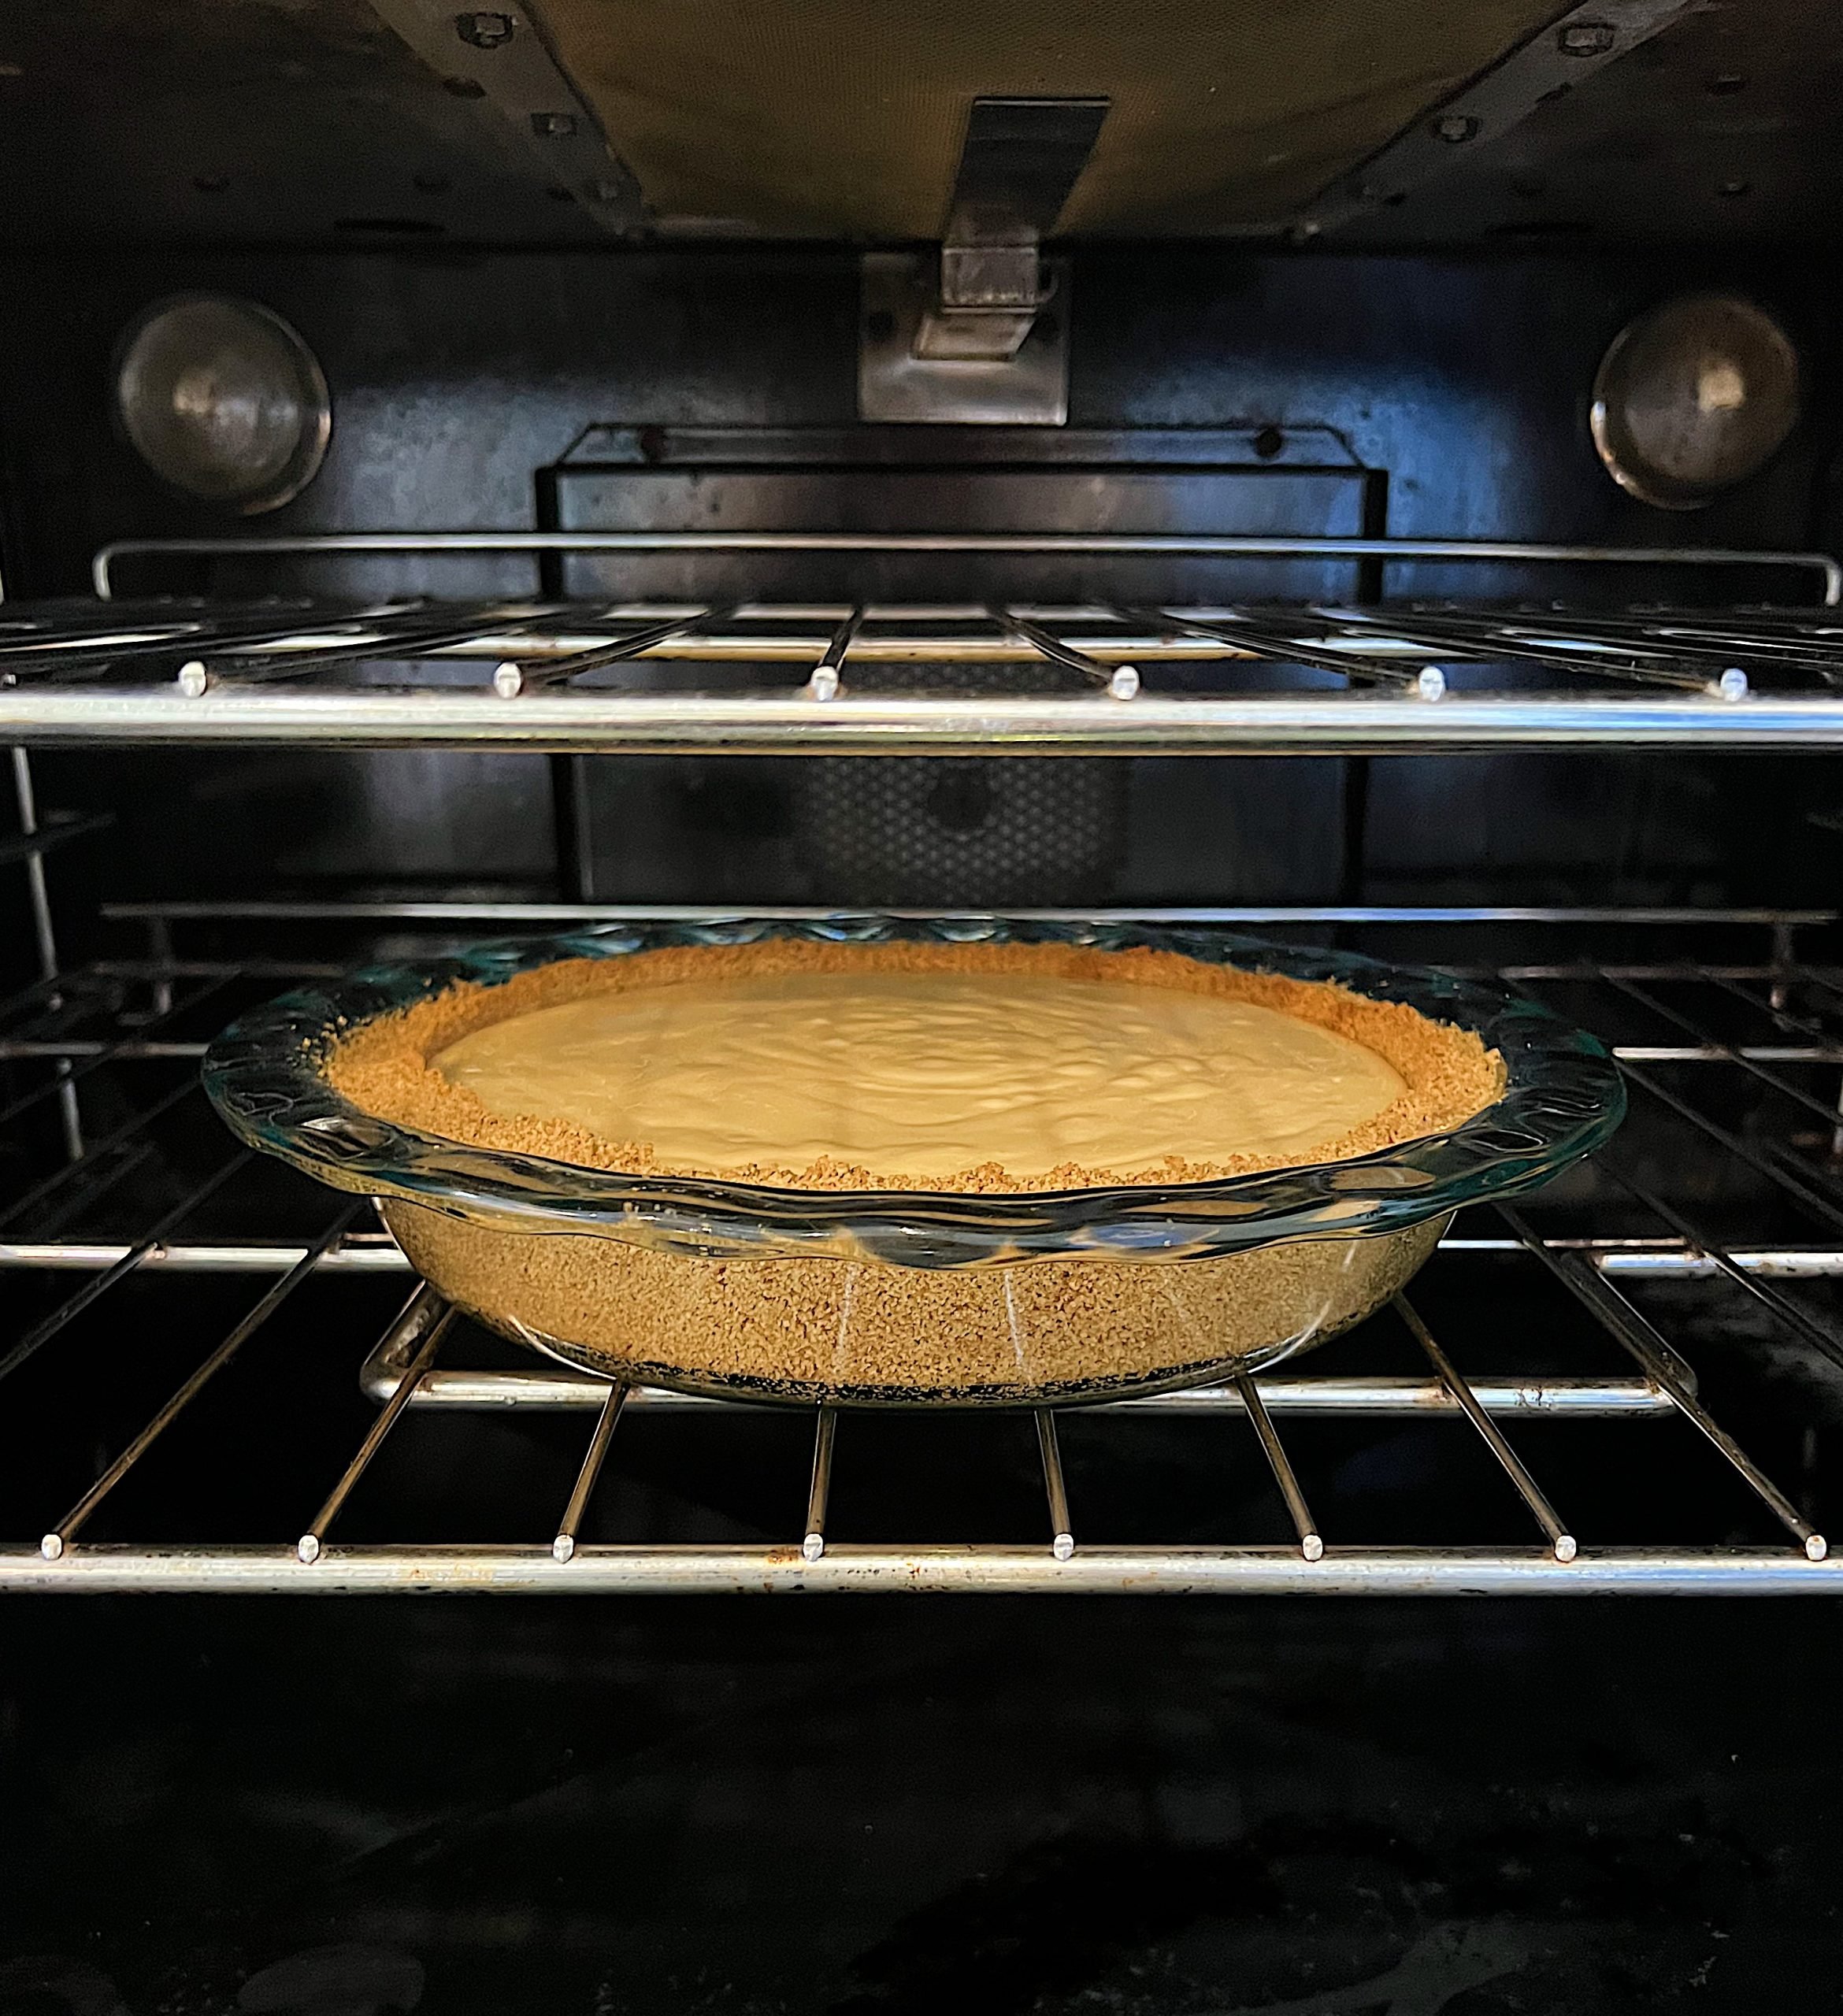 Baking the Meyer Lemon Cream Pie